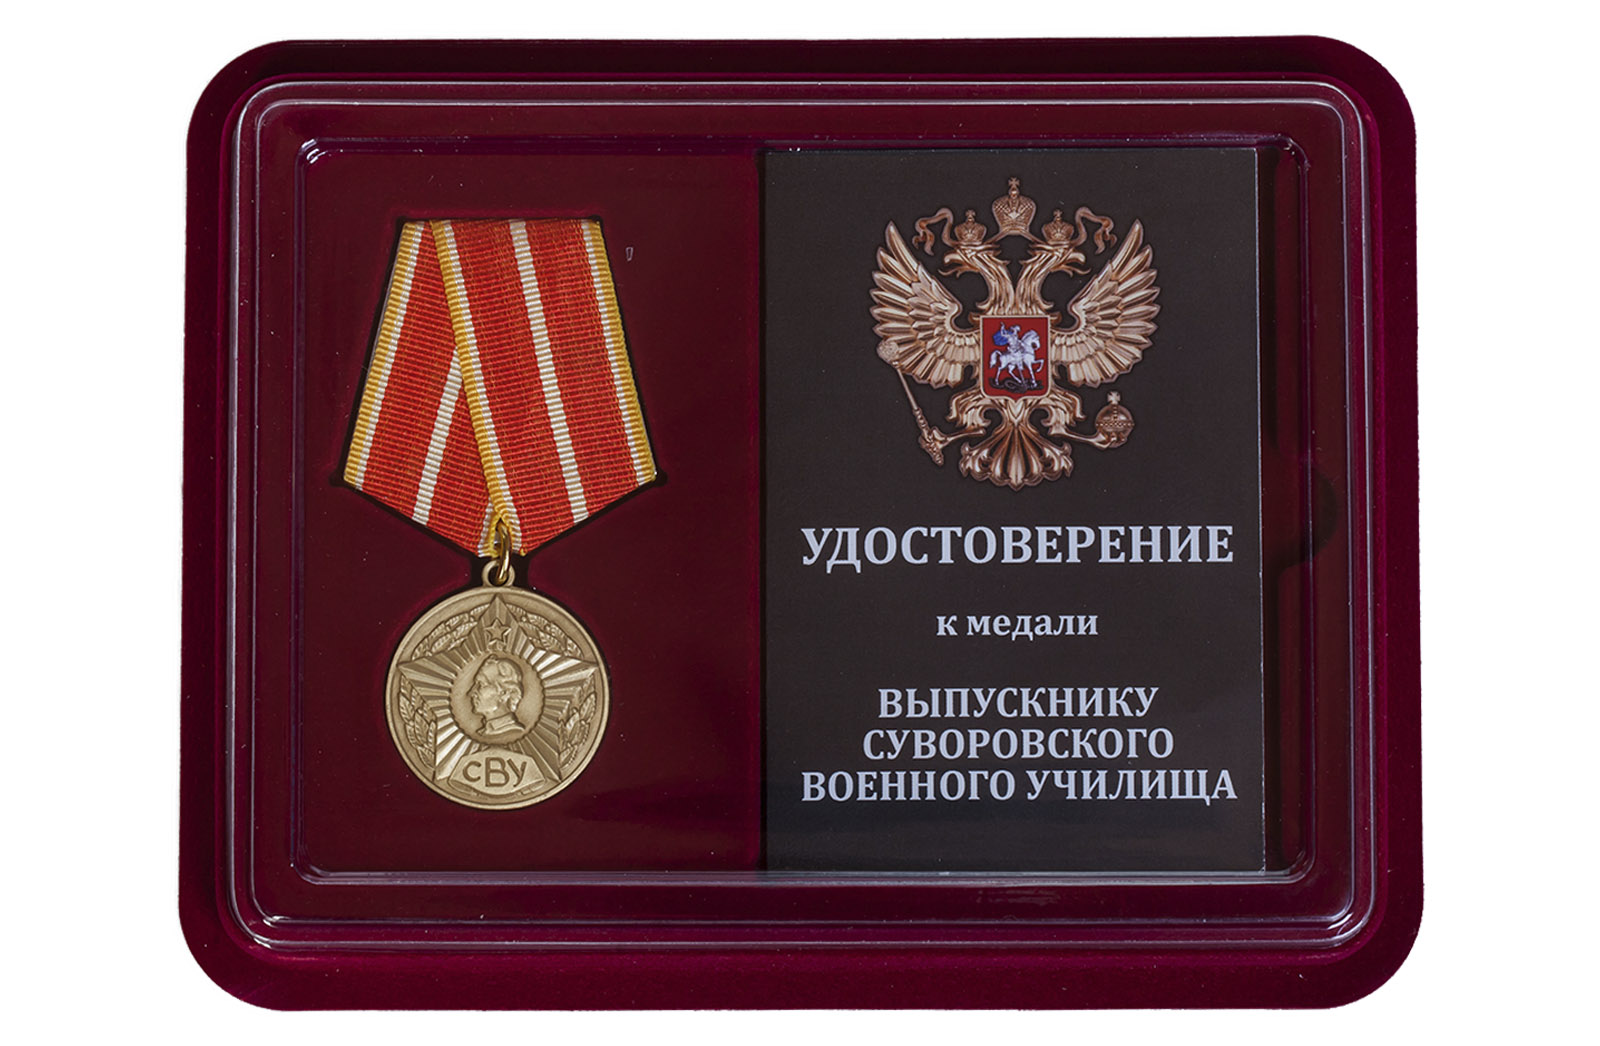 Купить общественную медаль Выпускнику Суворовского военного училища по низкой цене